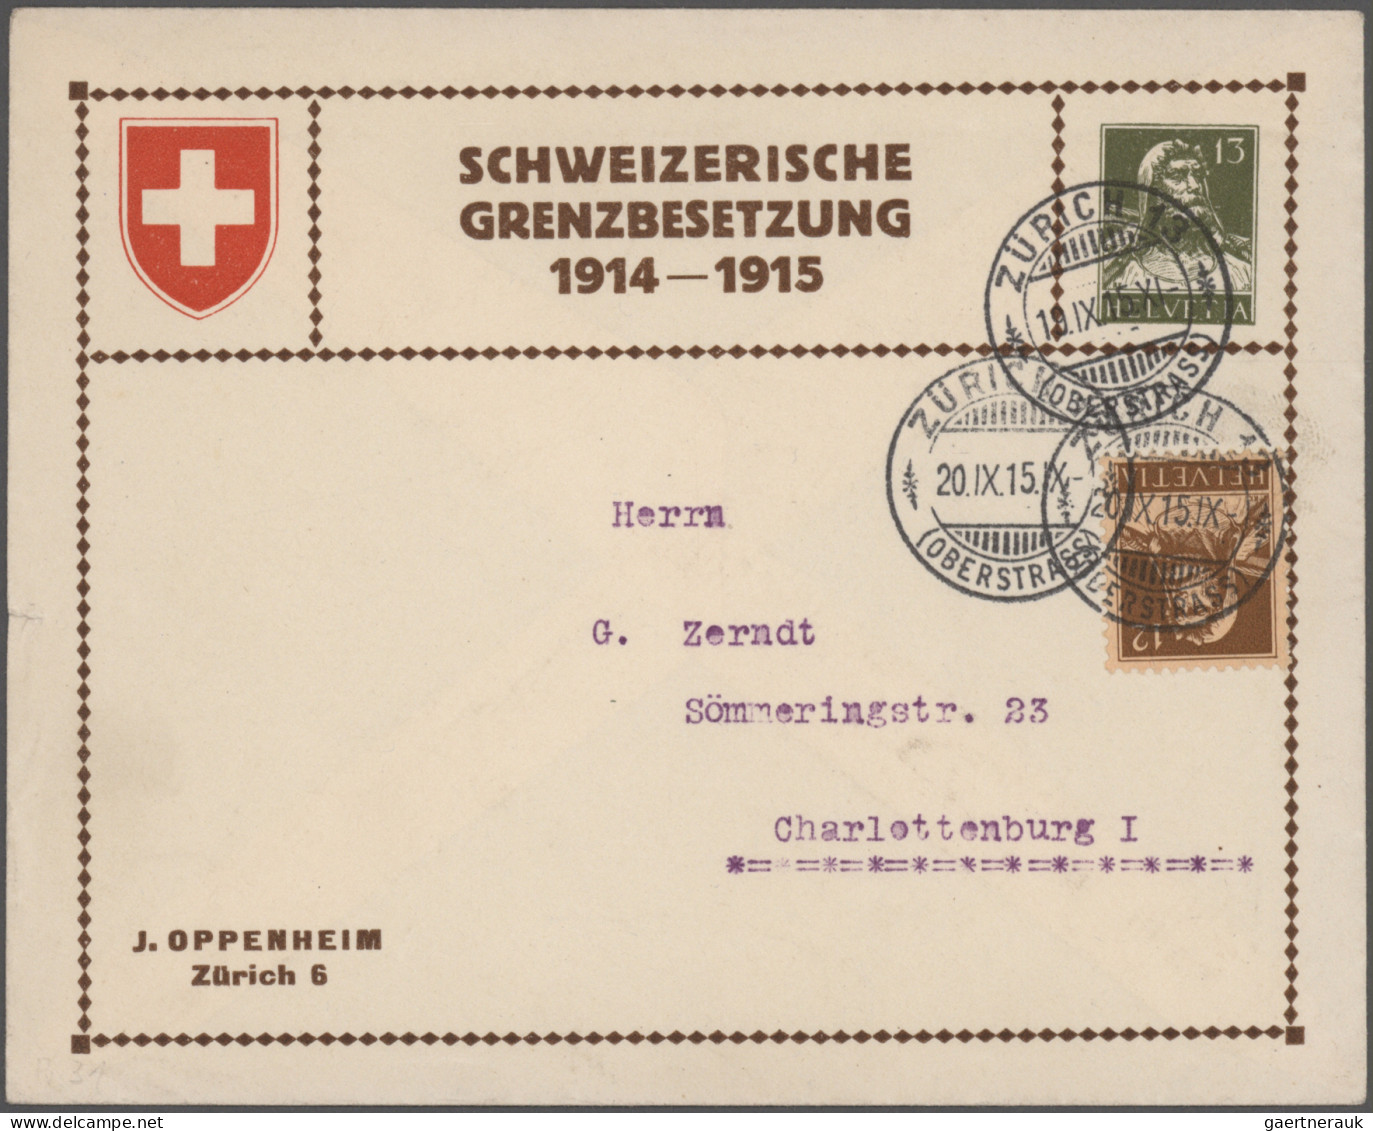 Schweiz: 1860/1970 (ca.), vielseitige Partie von ca. 230 Briefen, Karten und Gan